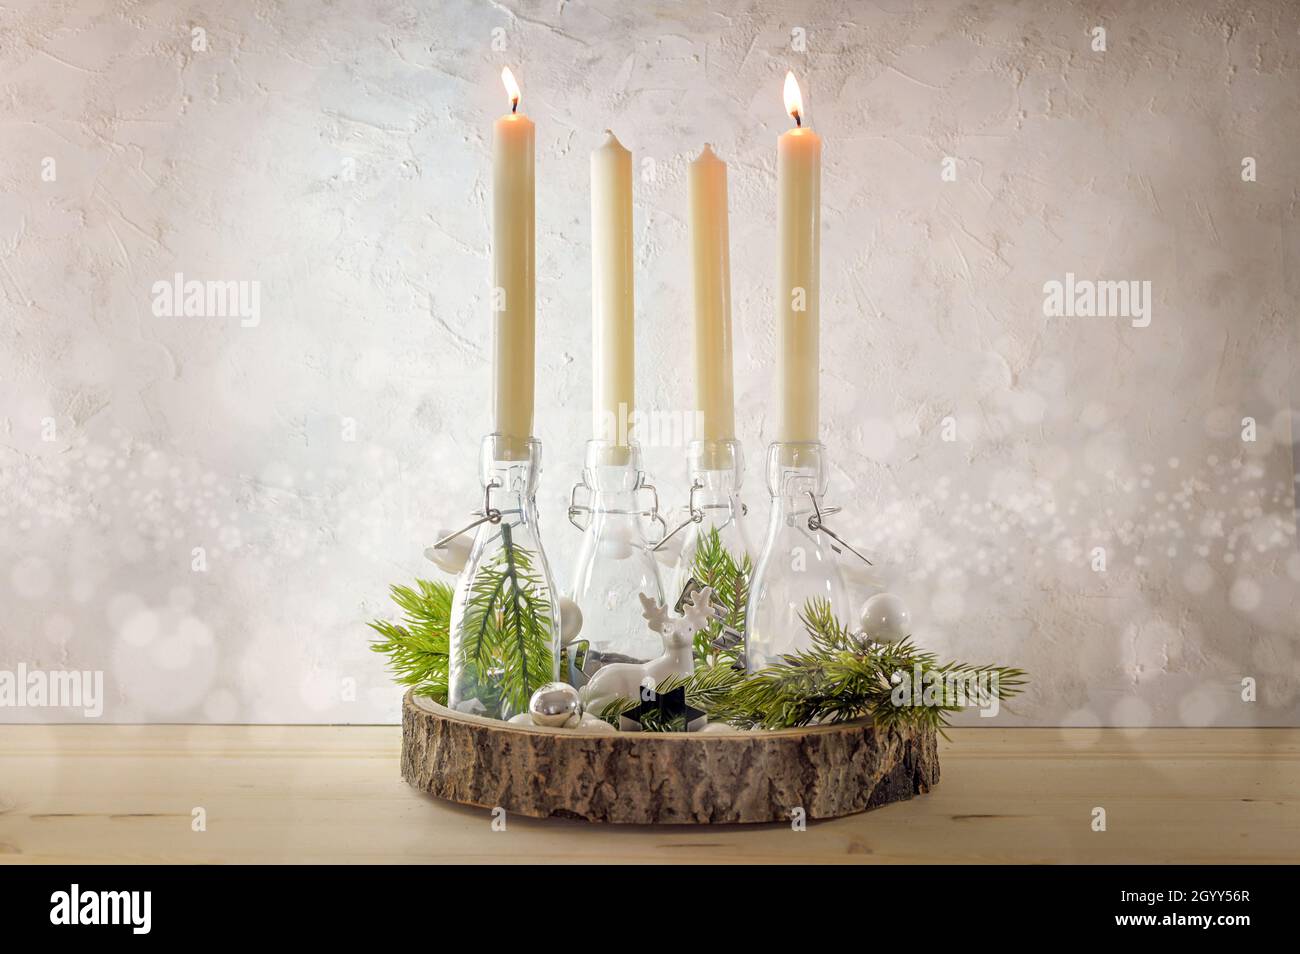 Kreativer Adventskranz, Kerzen in Flaschen auf einem Holzbrett mit Tannenzweigen und Dekoration gegen eine leichte rustikale Wand, zwei werden am zweiten S angezündet Stockfoto